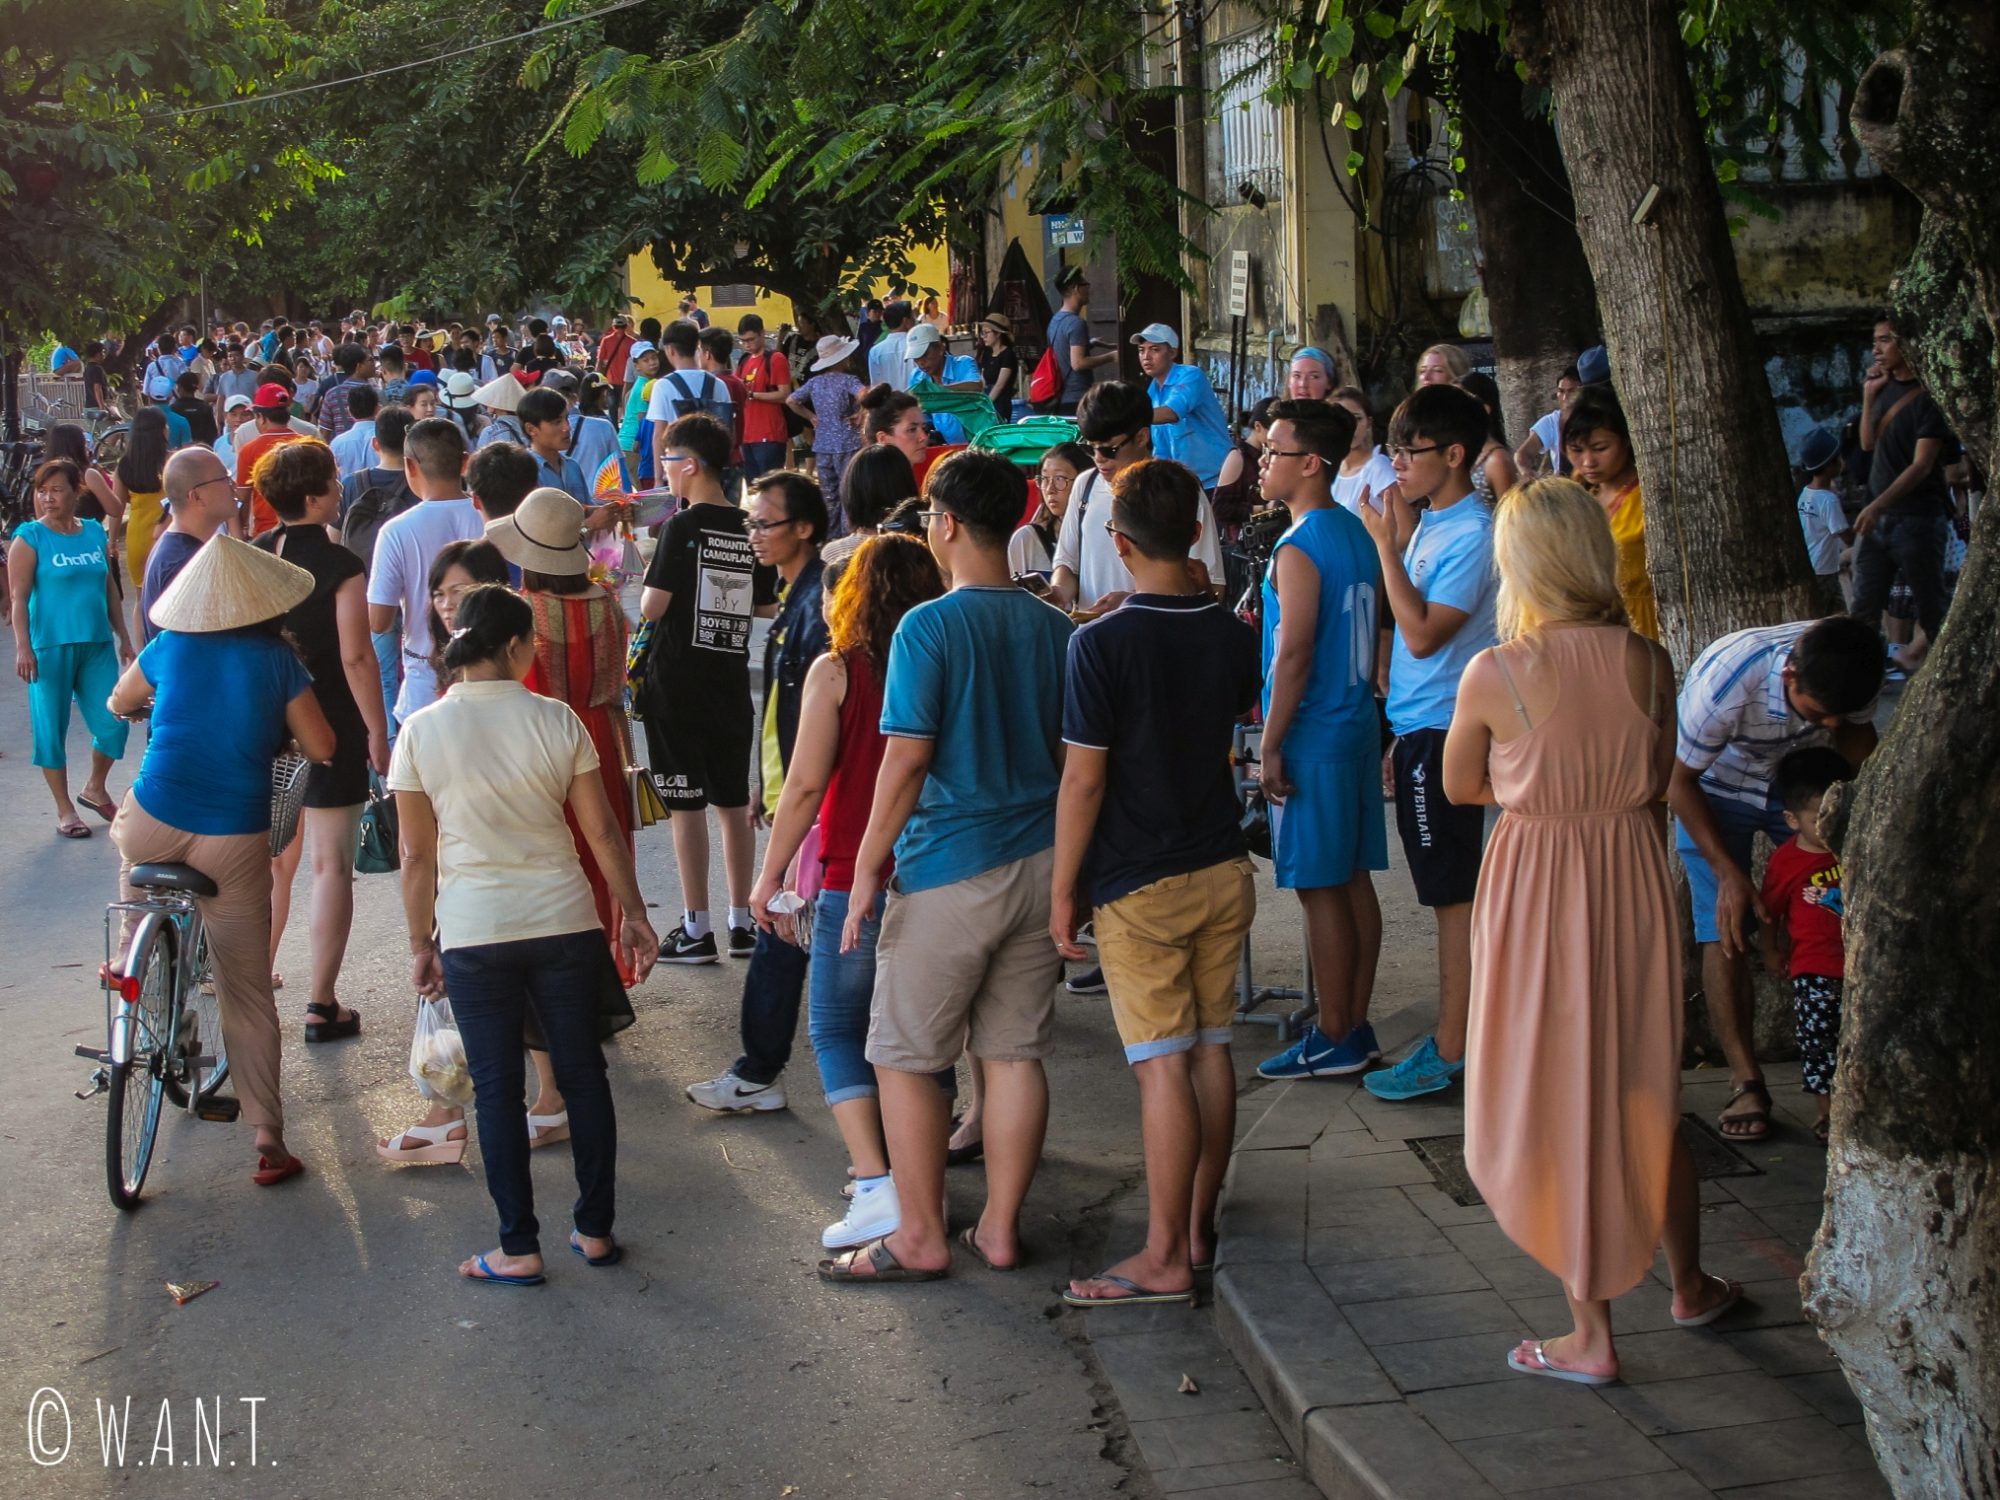 La foule se presse dans les rues de la vieille ville de Hoi An